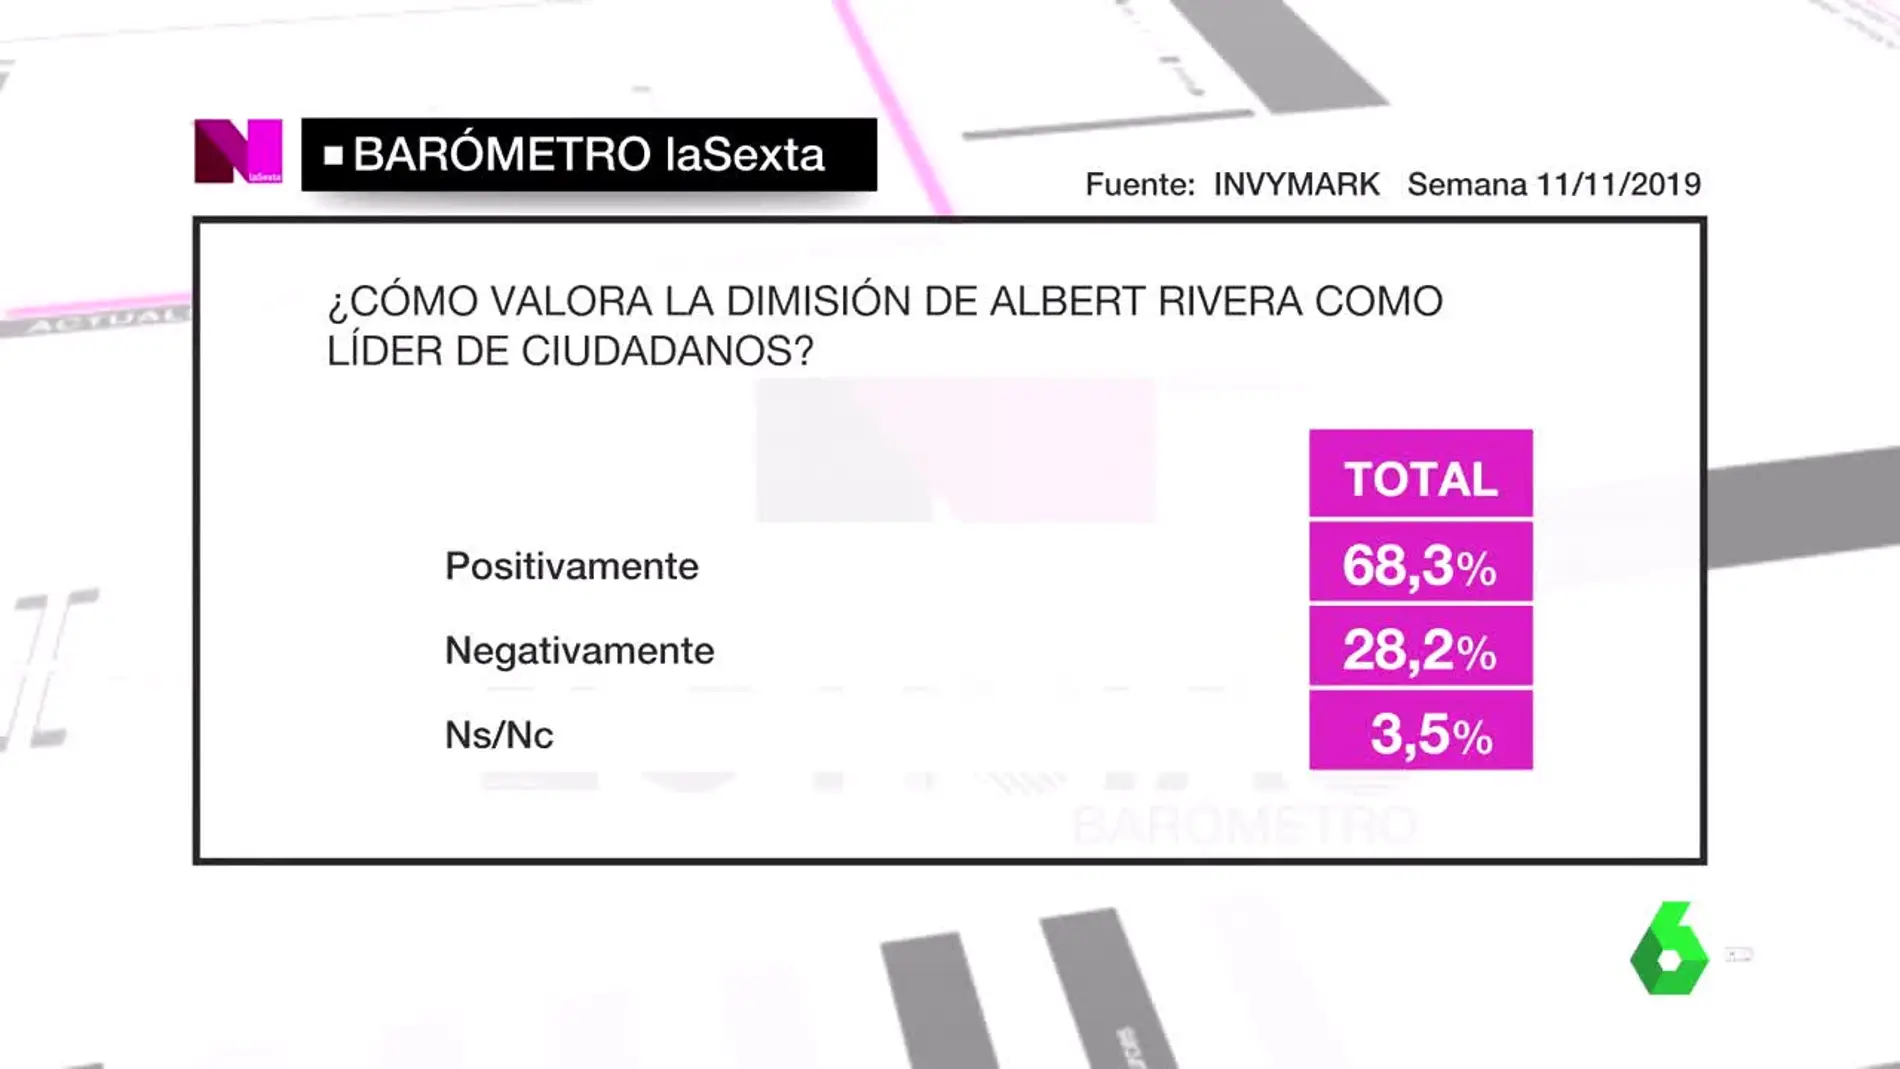 Barómetro laSexta sobre Albert Rivera y Ciudadanos